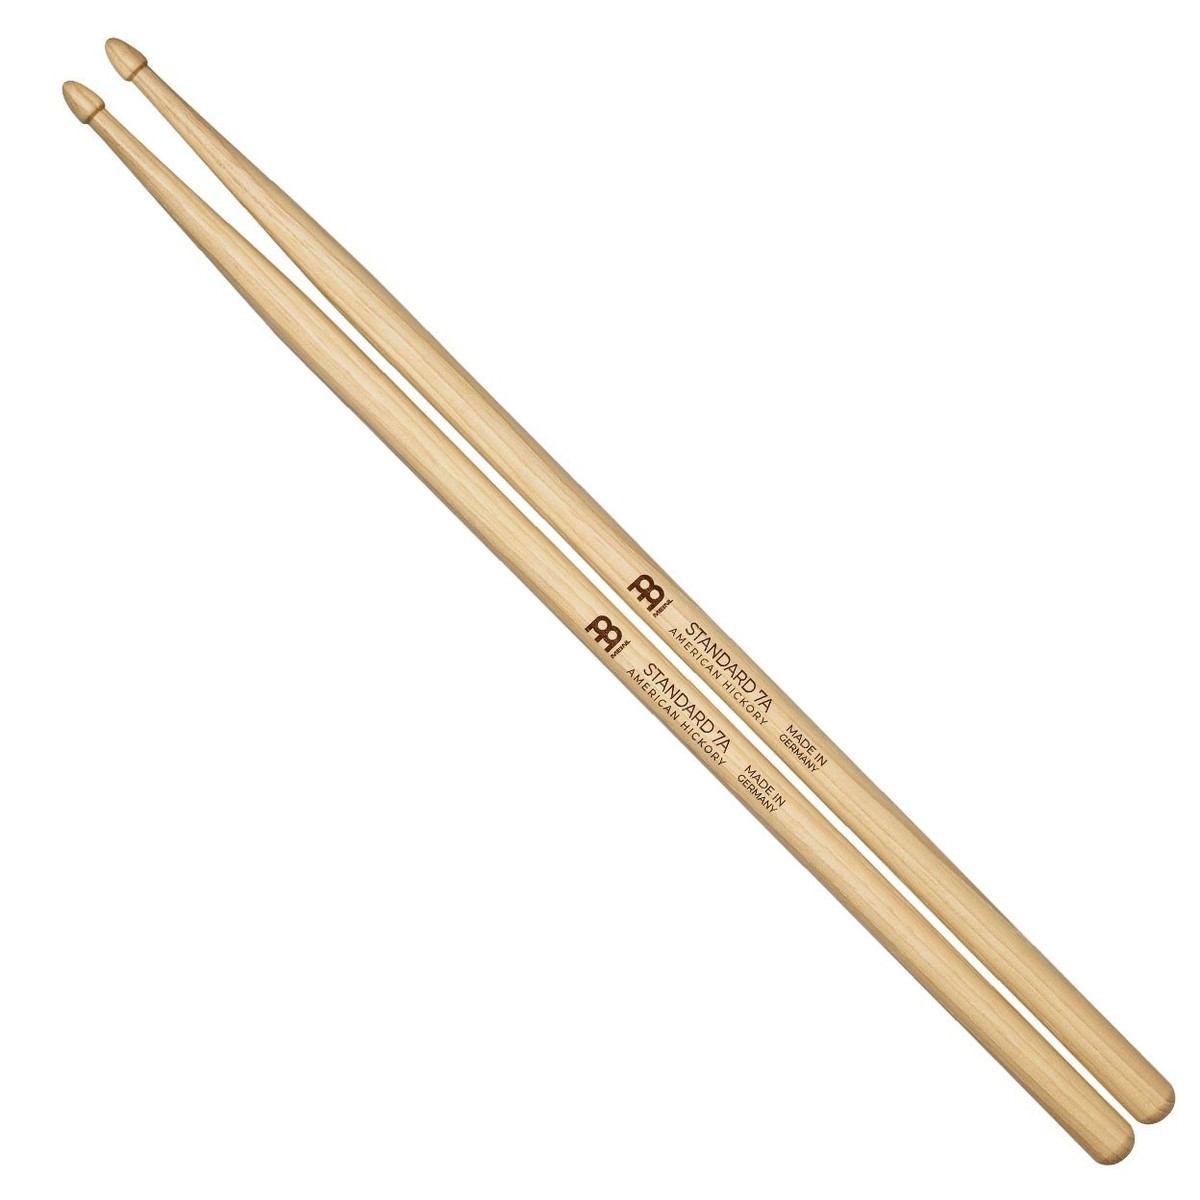 Meinl Standard Long 7A Wood Tip Hickory Drumsticks